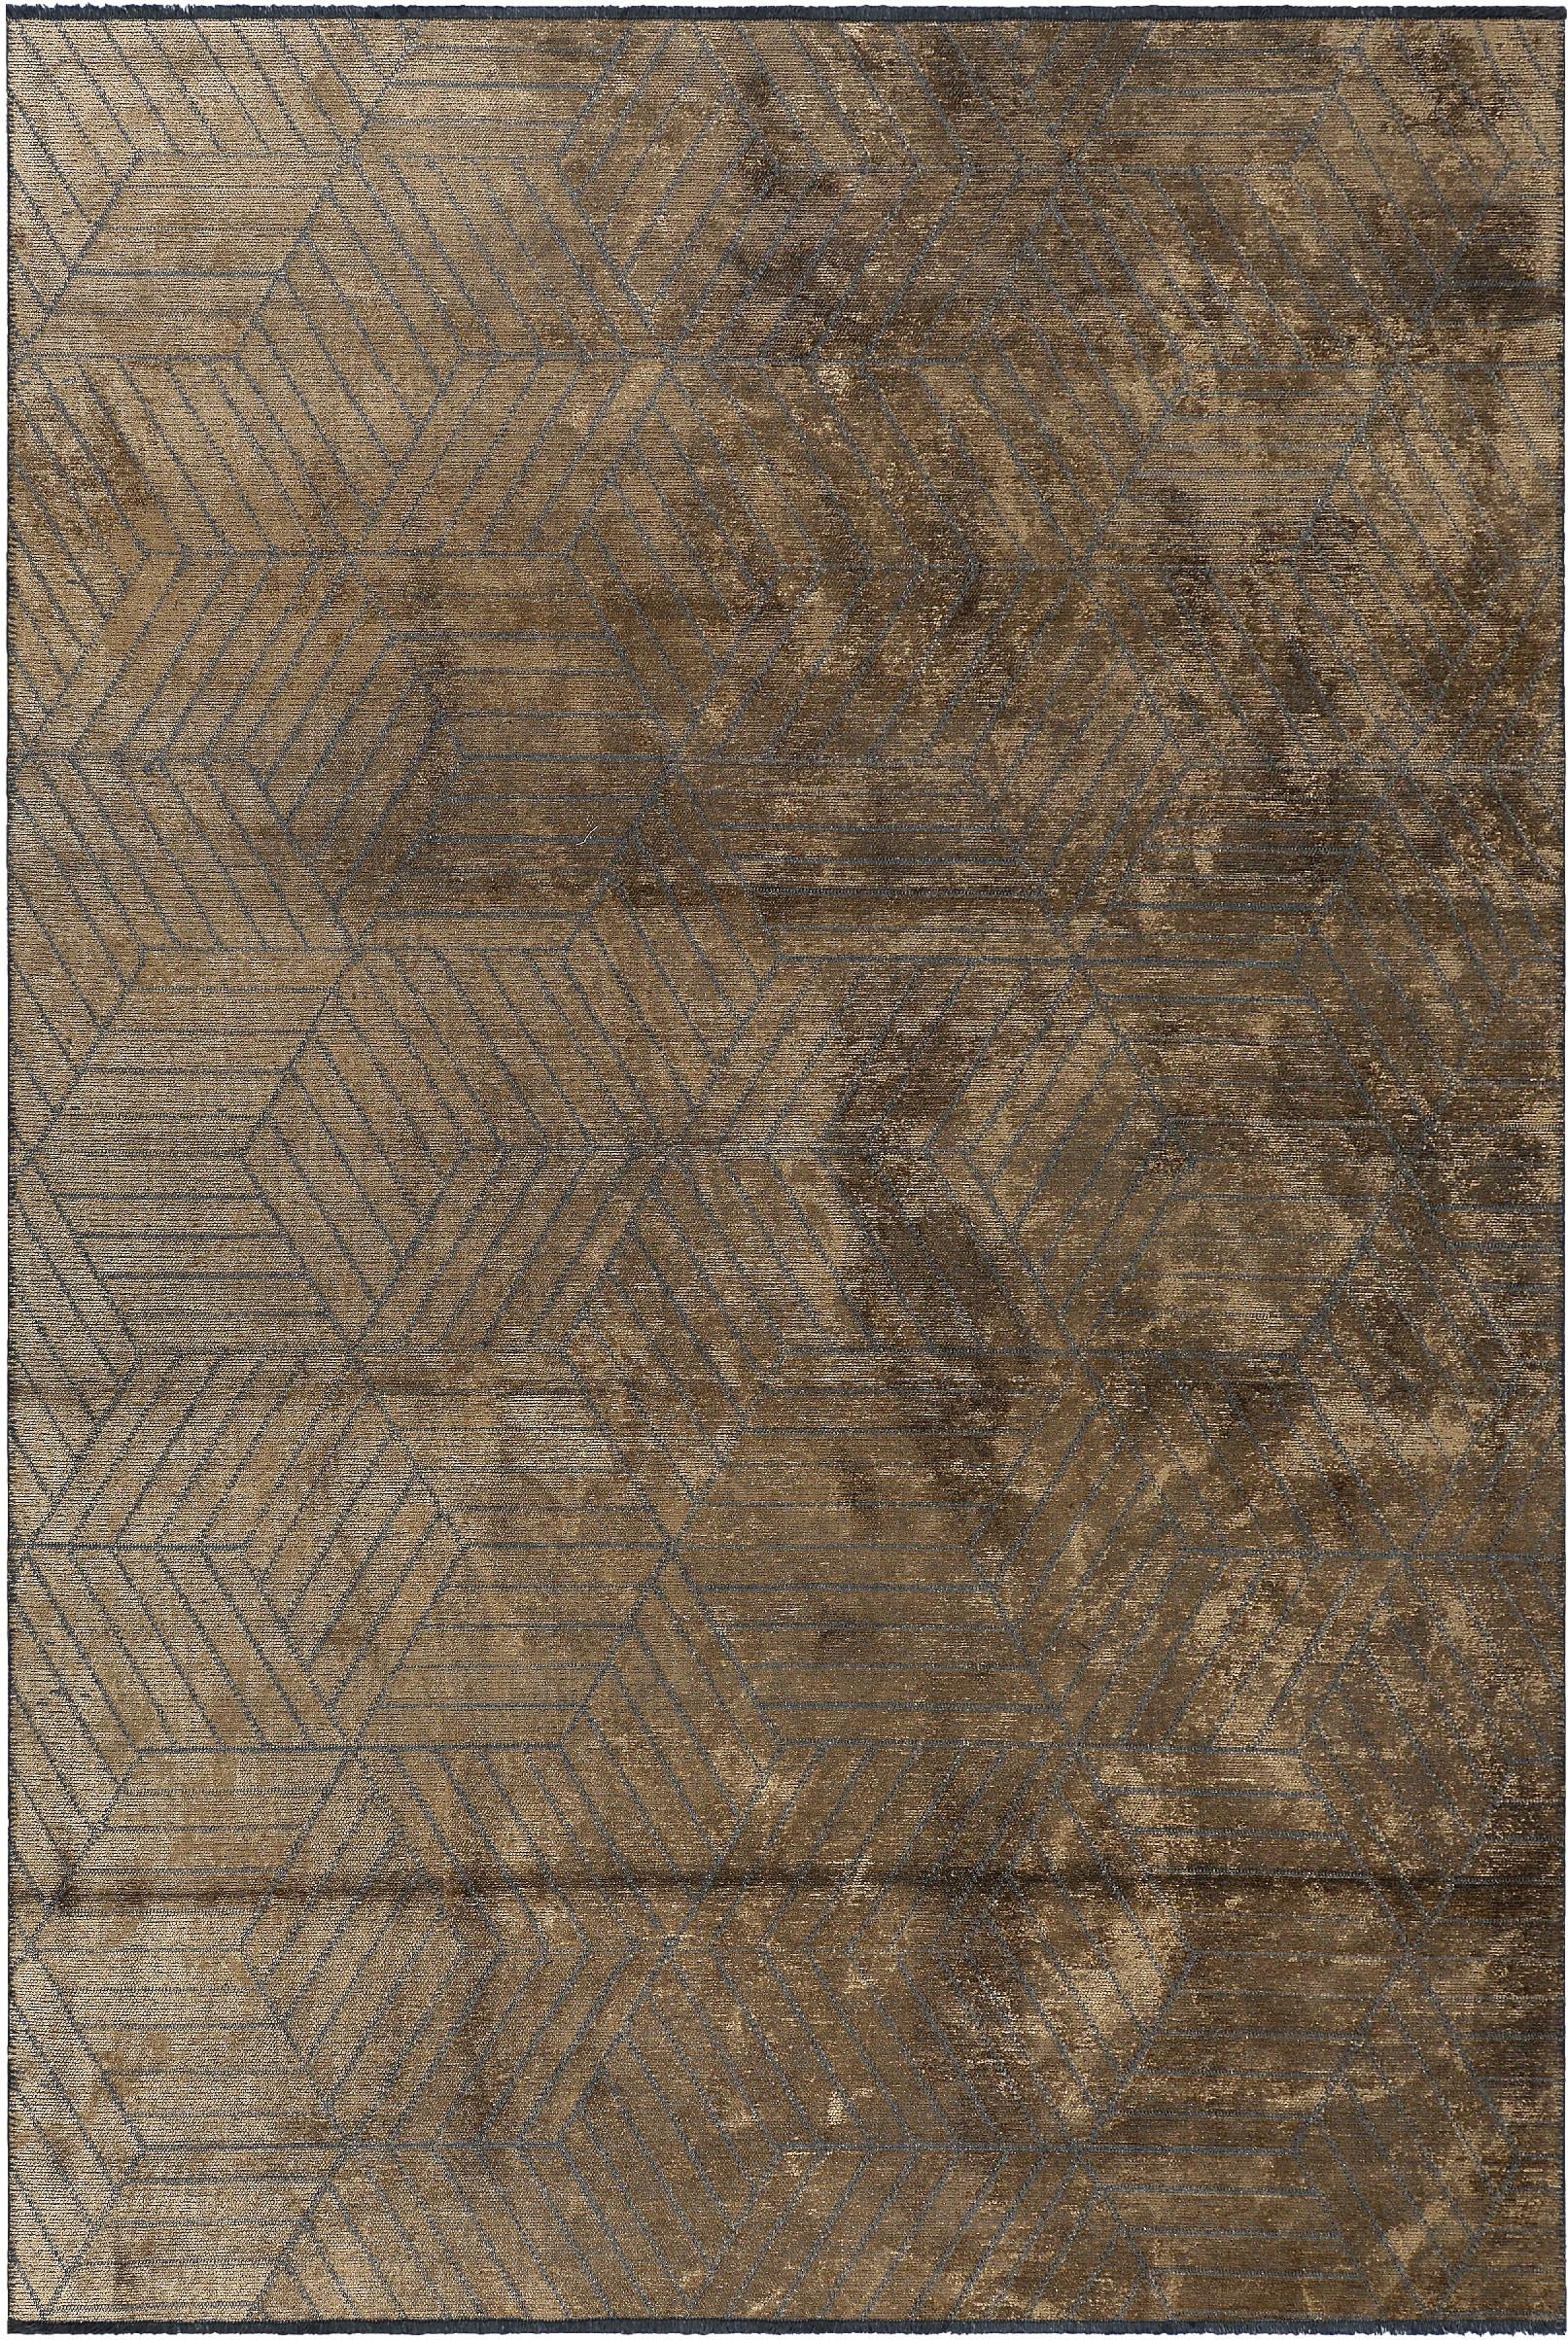 En vente :  (Marron) Tapis de sol contemporain géométrique de luxe